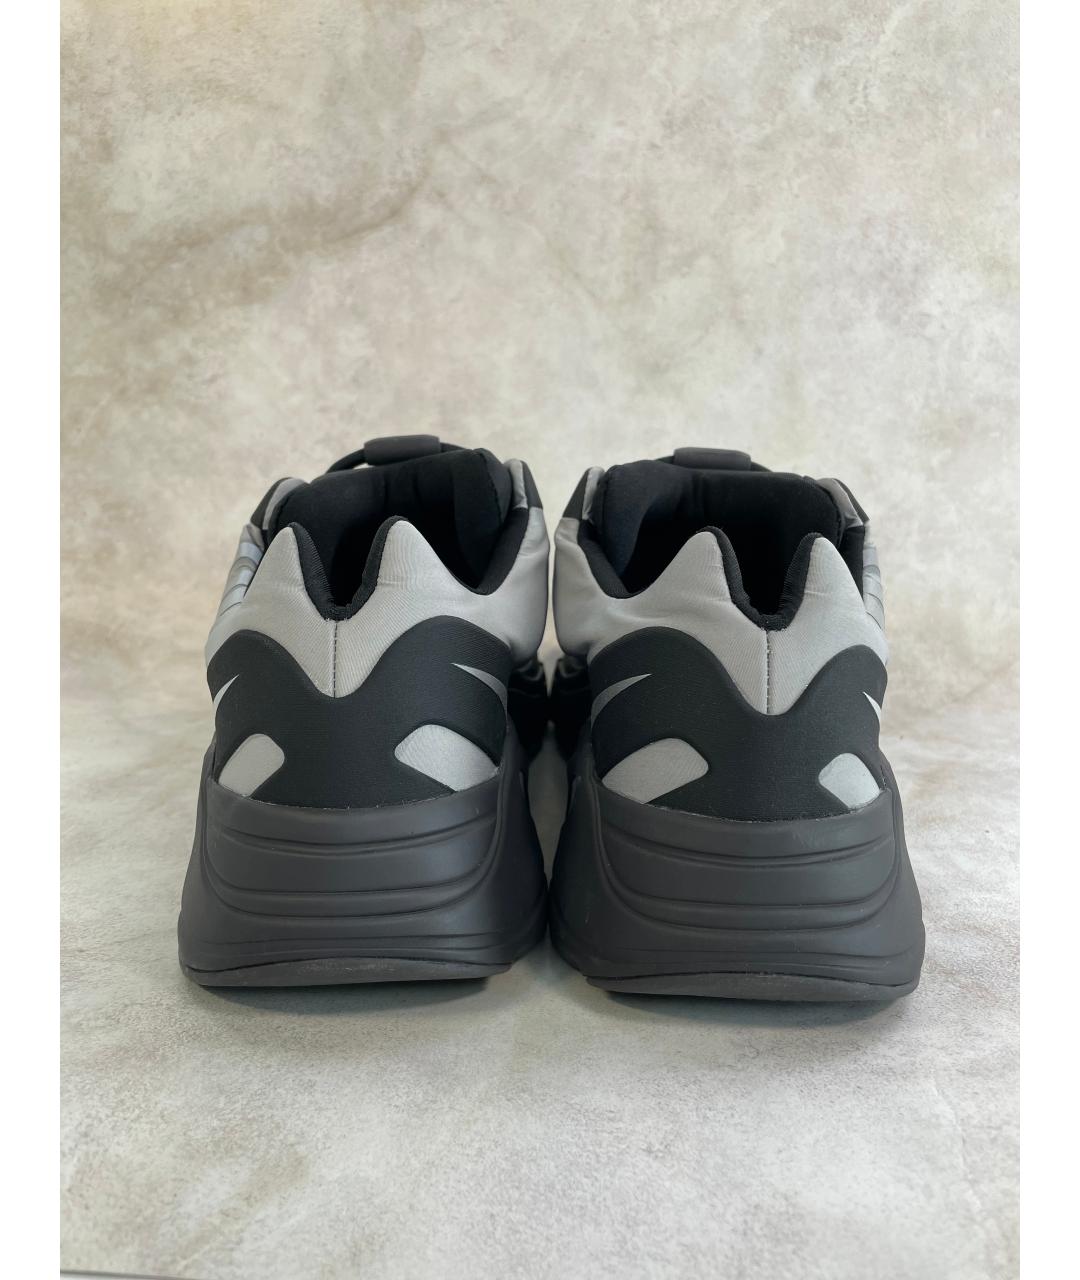 ADIDAS YEEZY Черные текстильные низкие кроссовки / кеды, фото 2